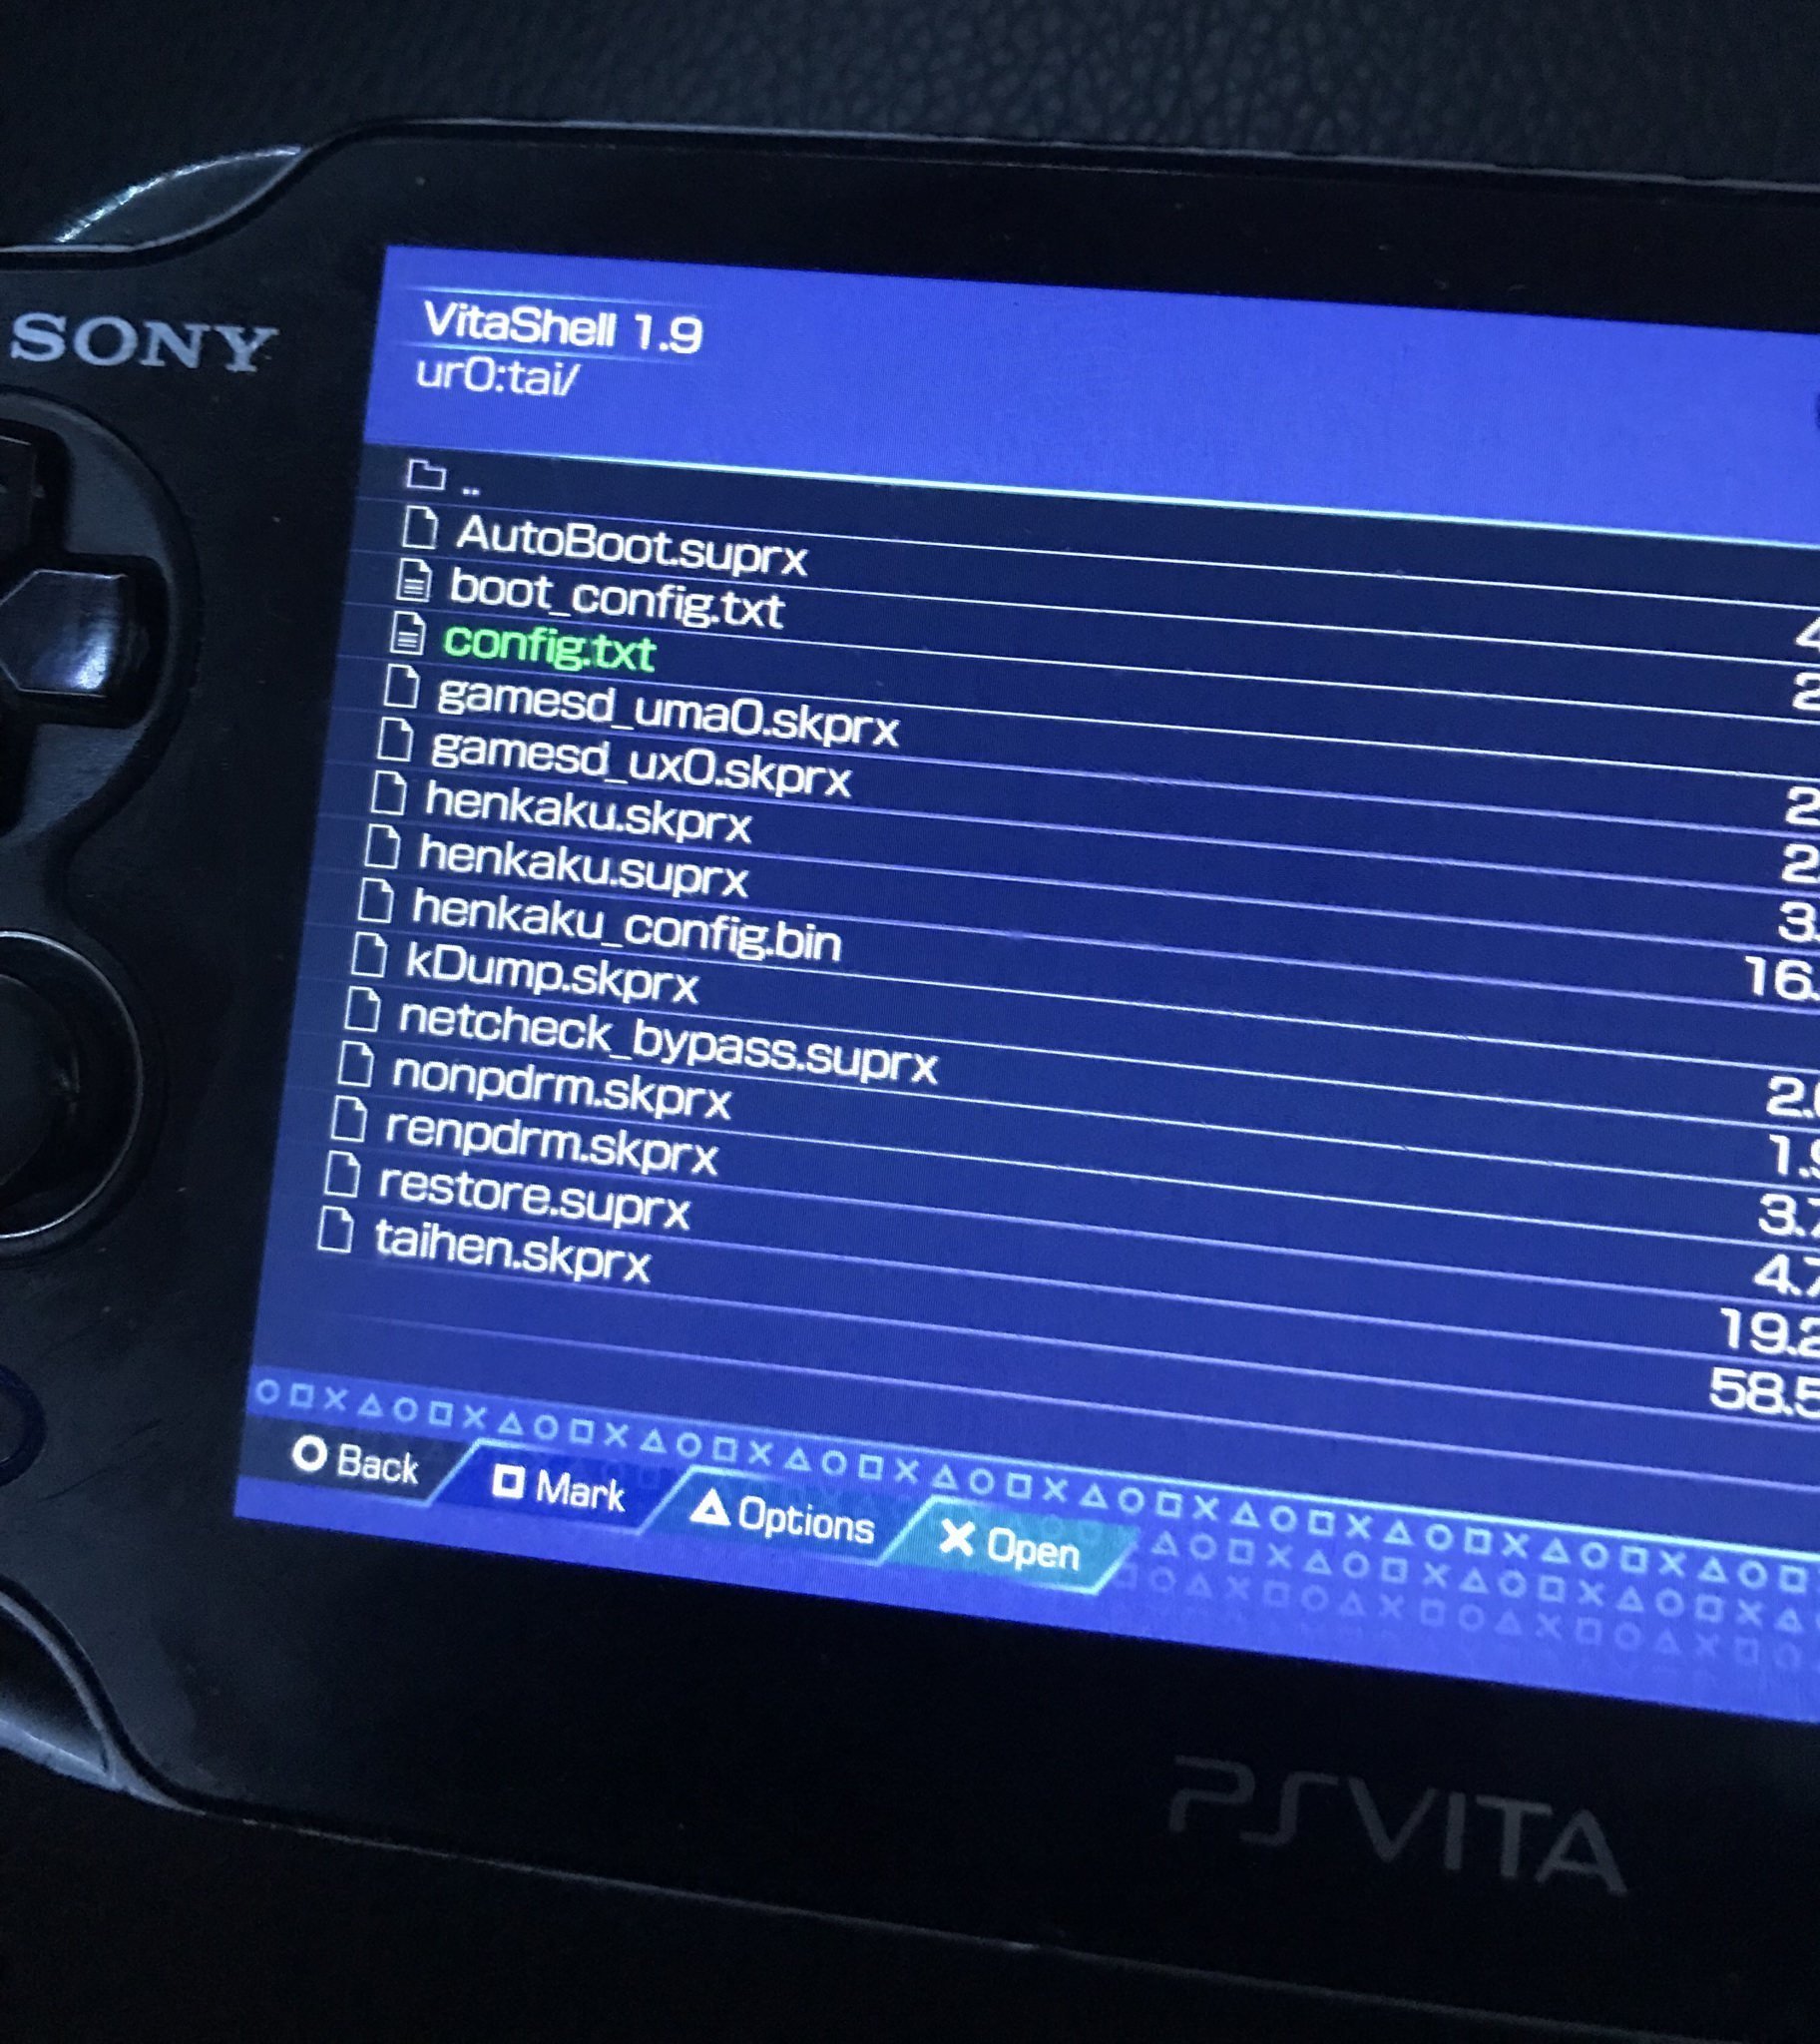 PSVita: PKGj gets updated & now adds PSP support!!! - Hackinformer